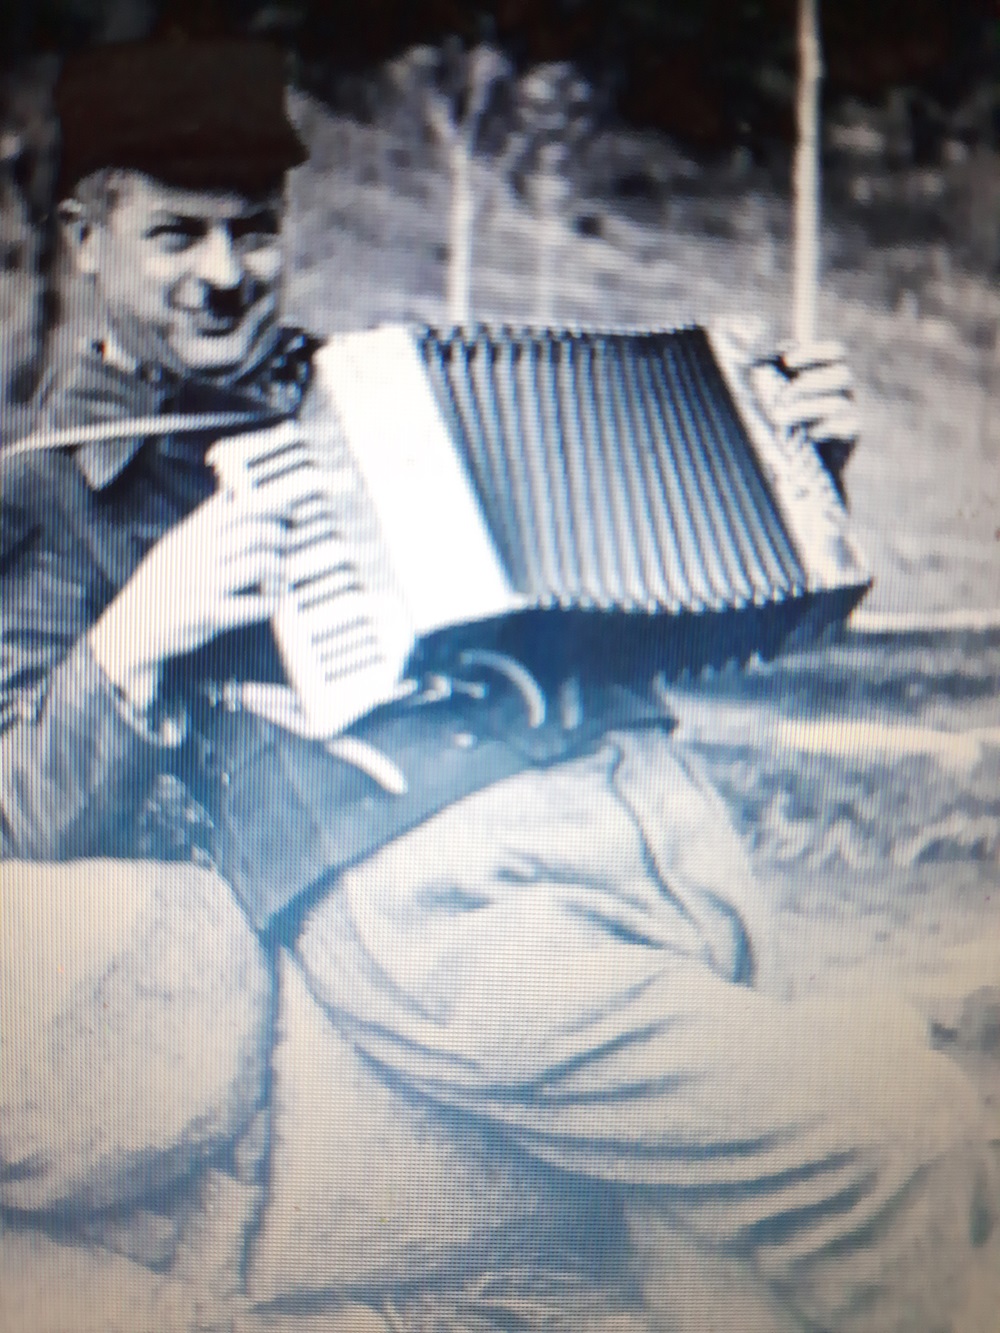 Хелбут Брокс често свири на хармоника или акордеон